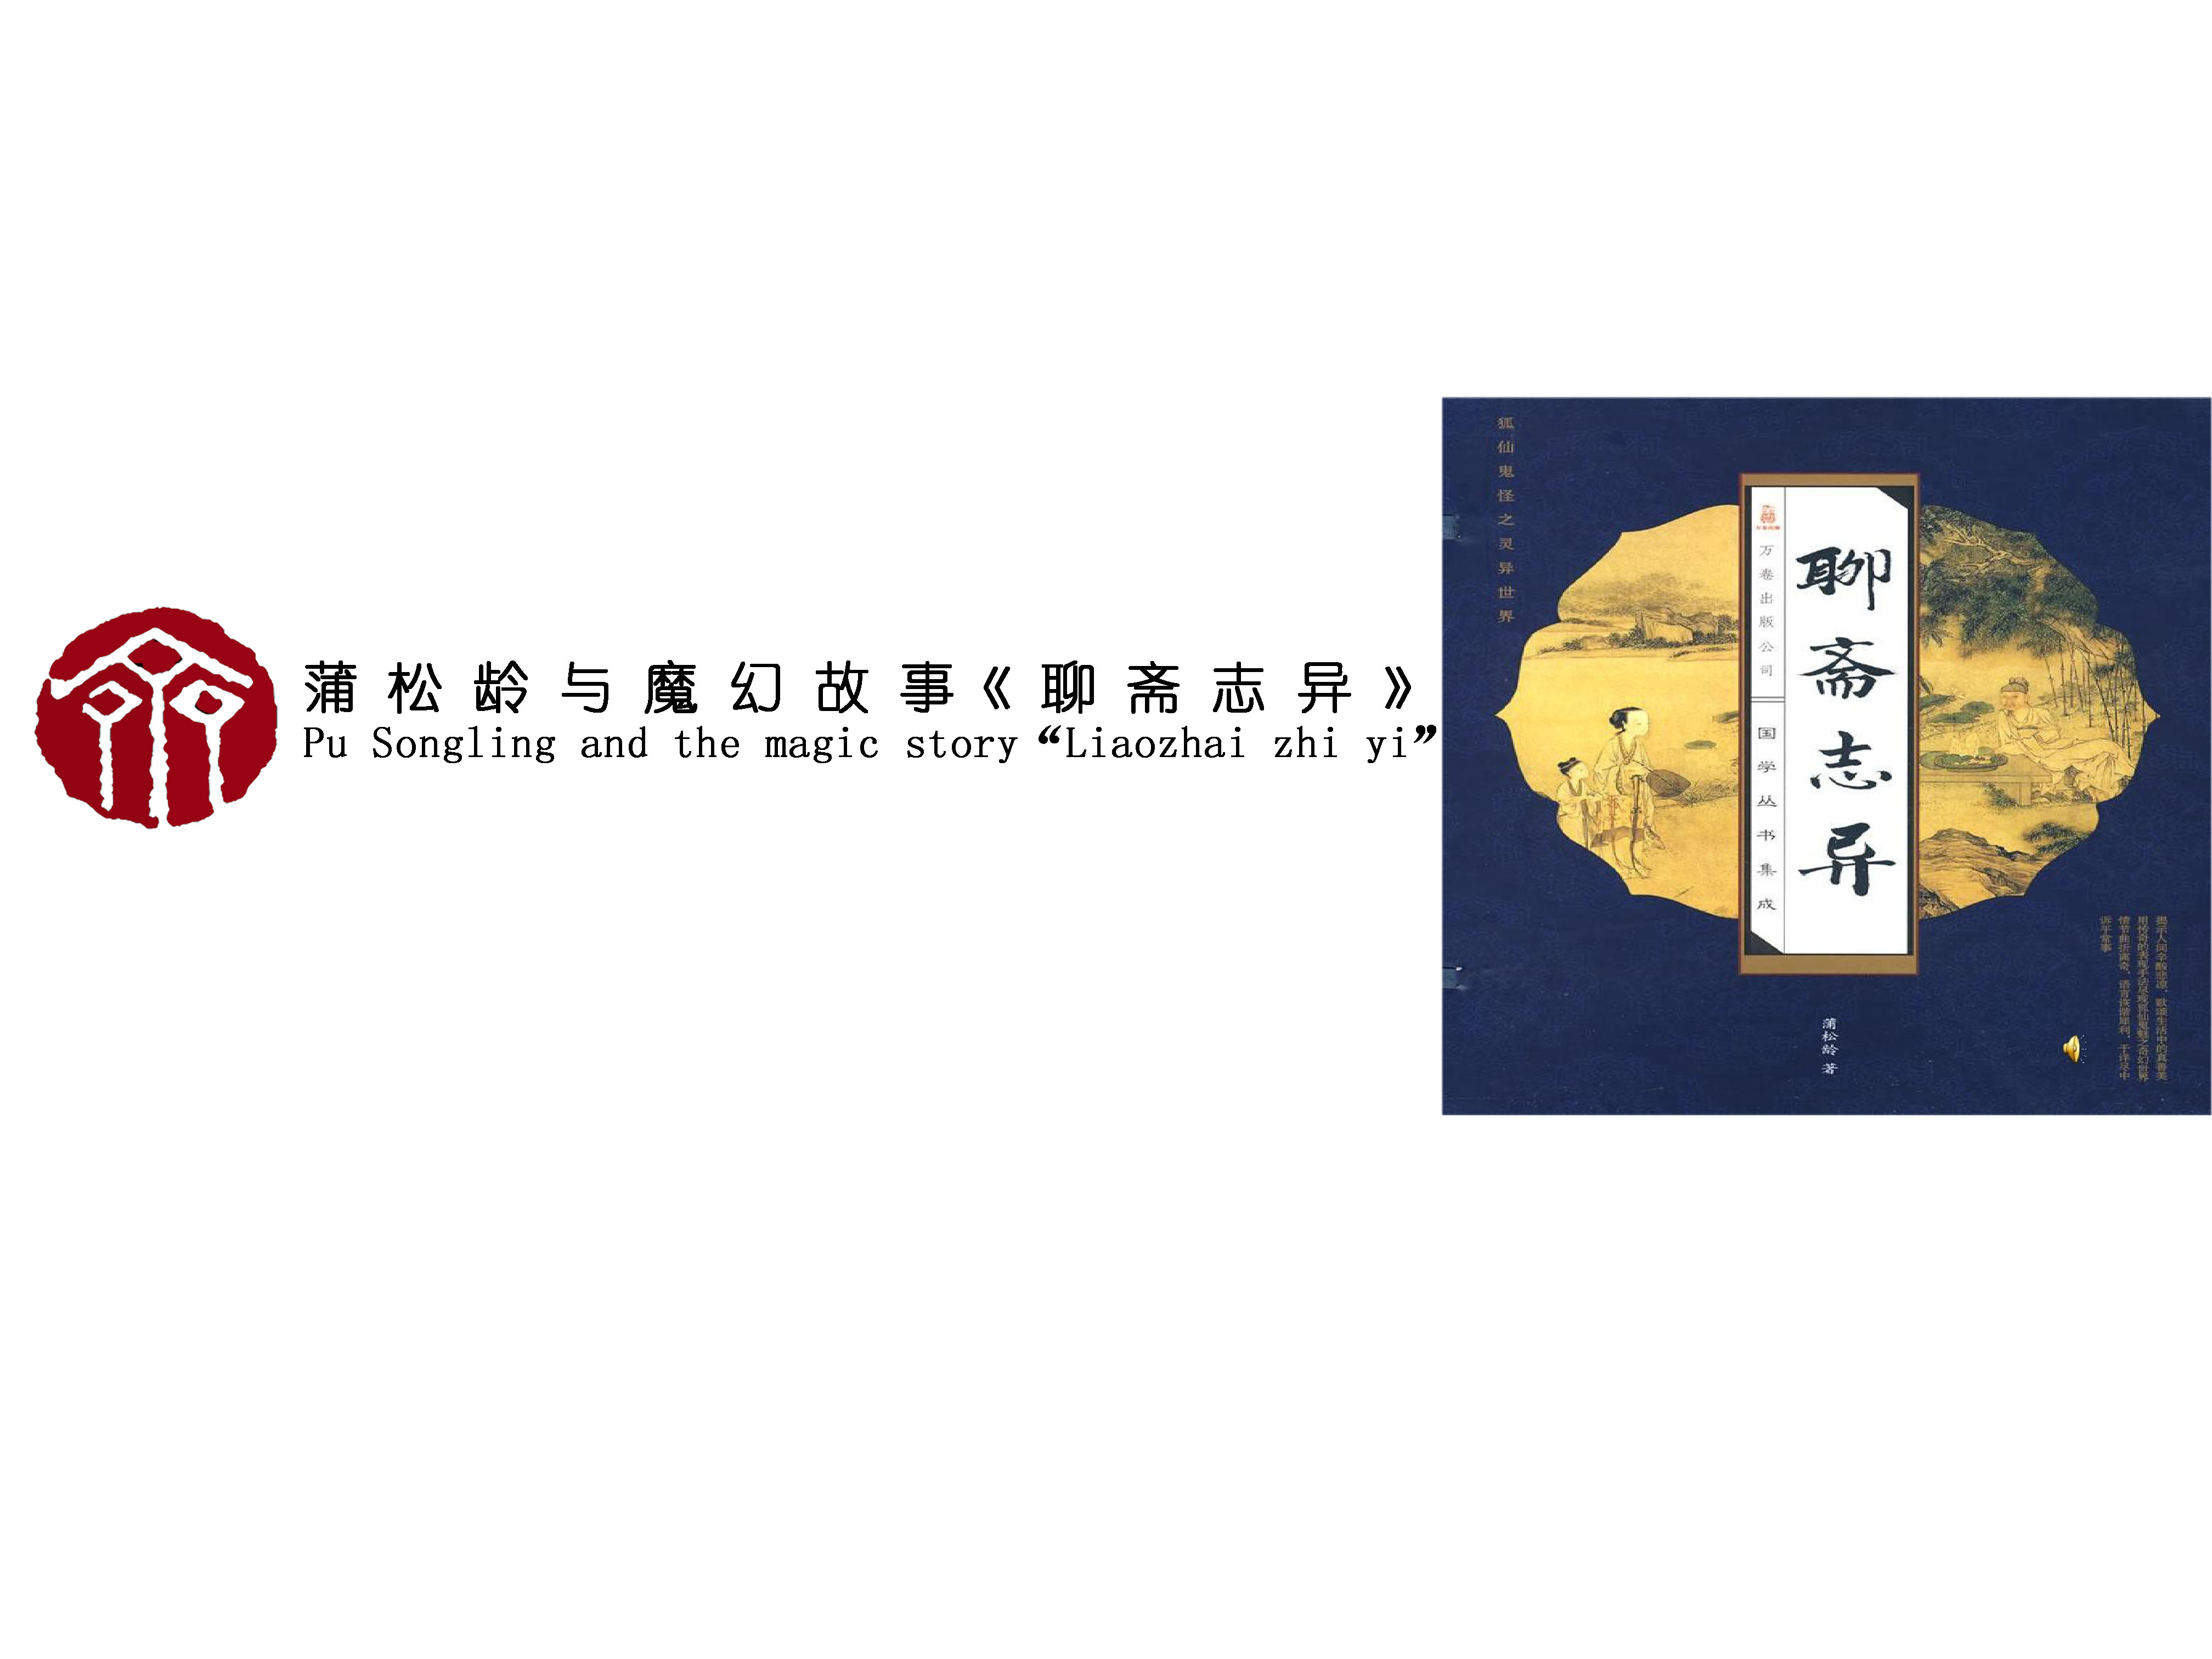 Pu Songling and the magic story “Liaozhai zhi yi”